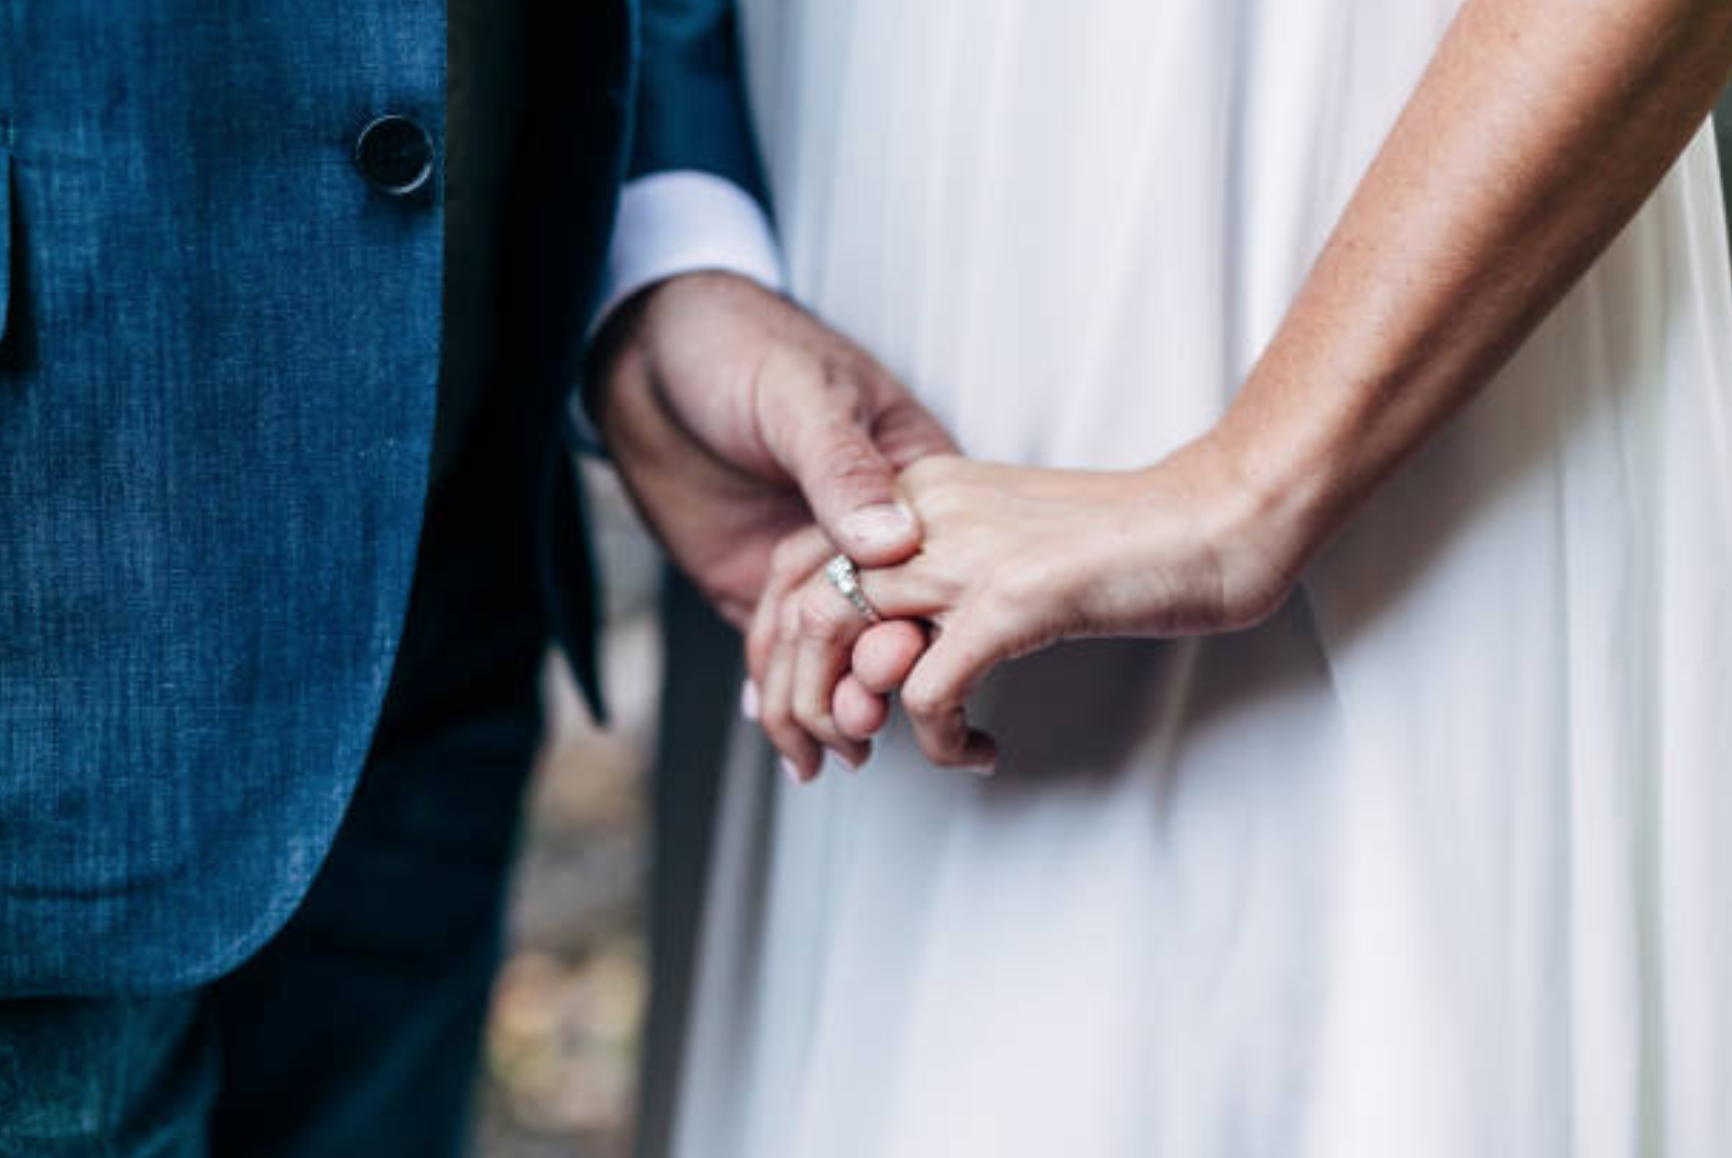 47 tuổi tái hôn với ông 52, sau 2 năm khóc đòi bỏ: 